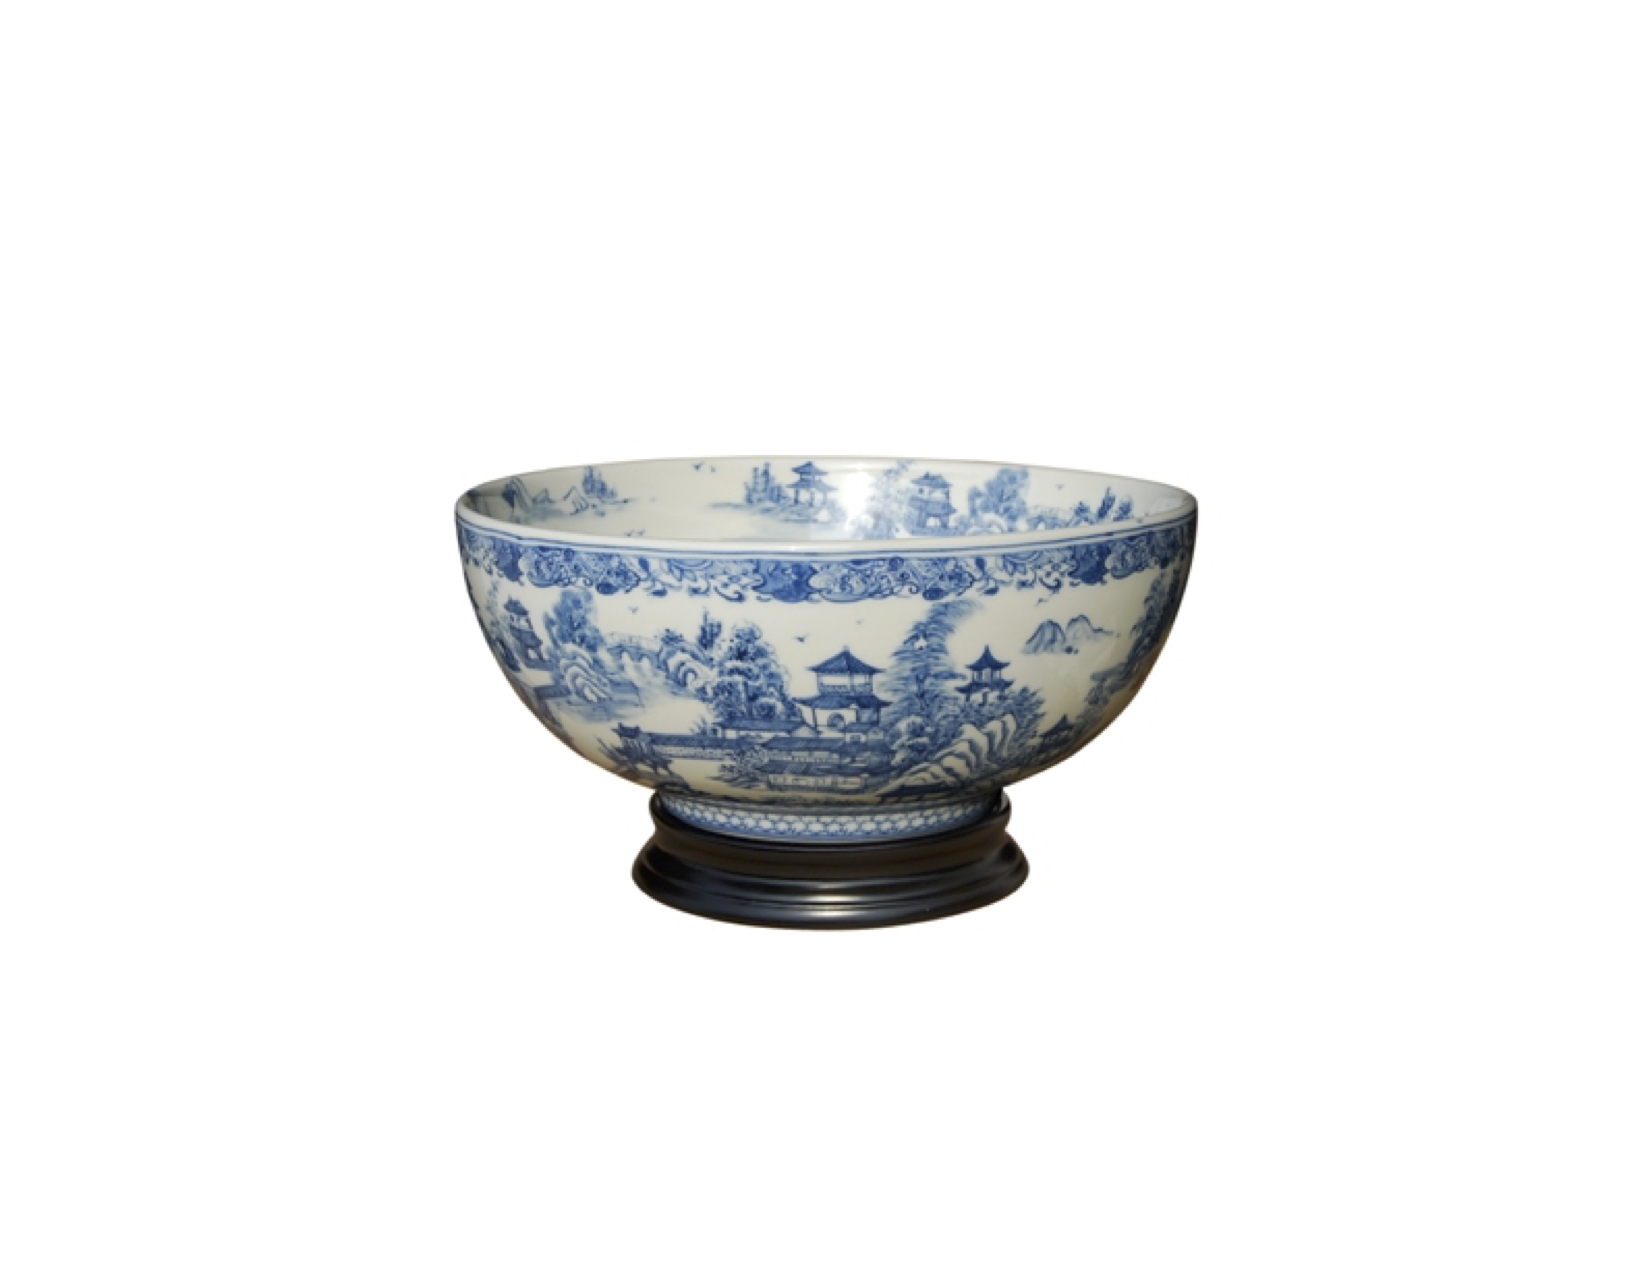 Porcelain decorative bowl